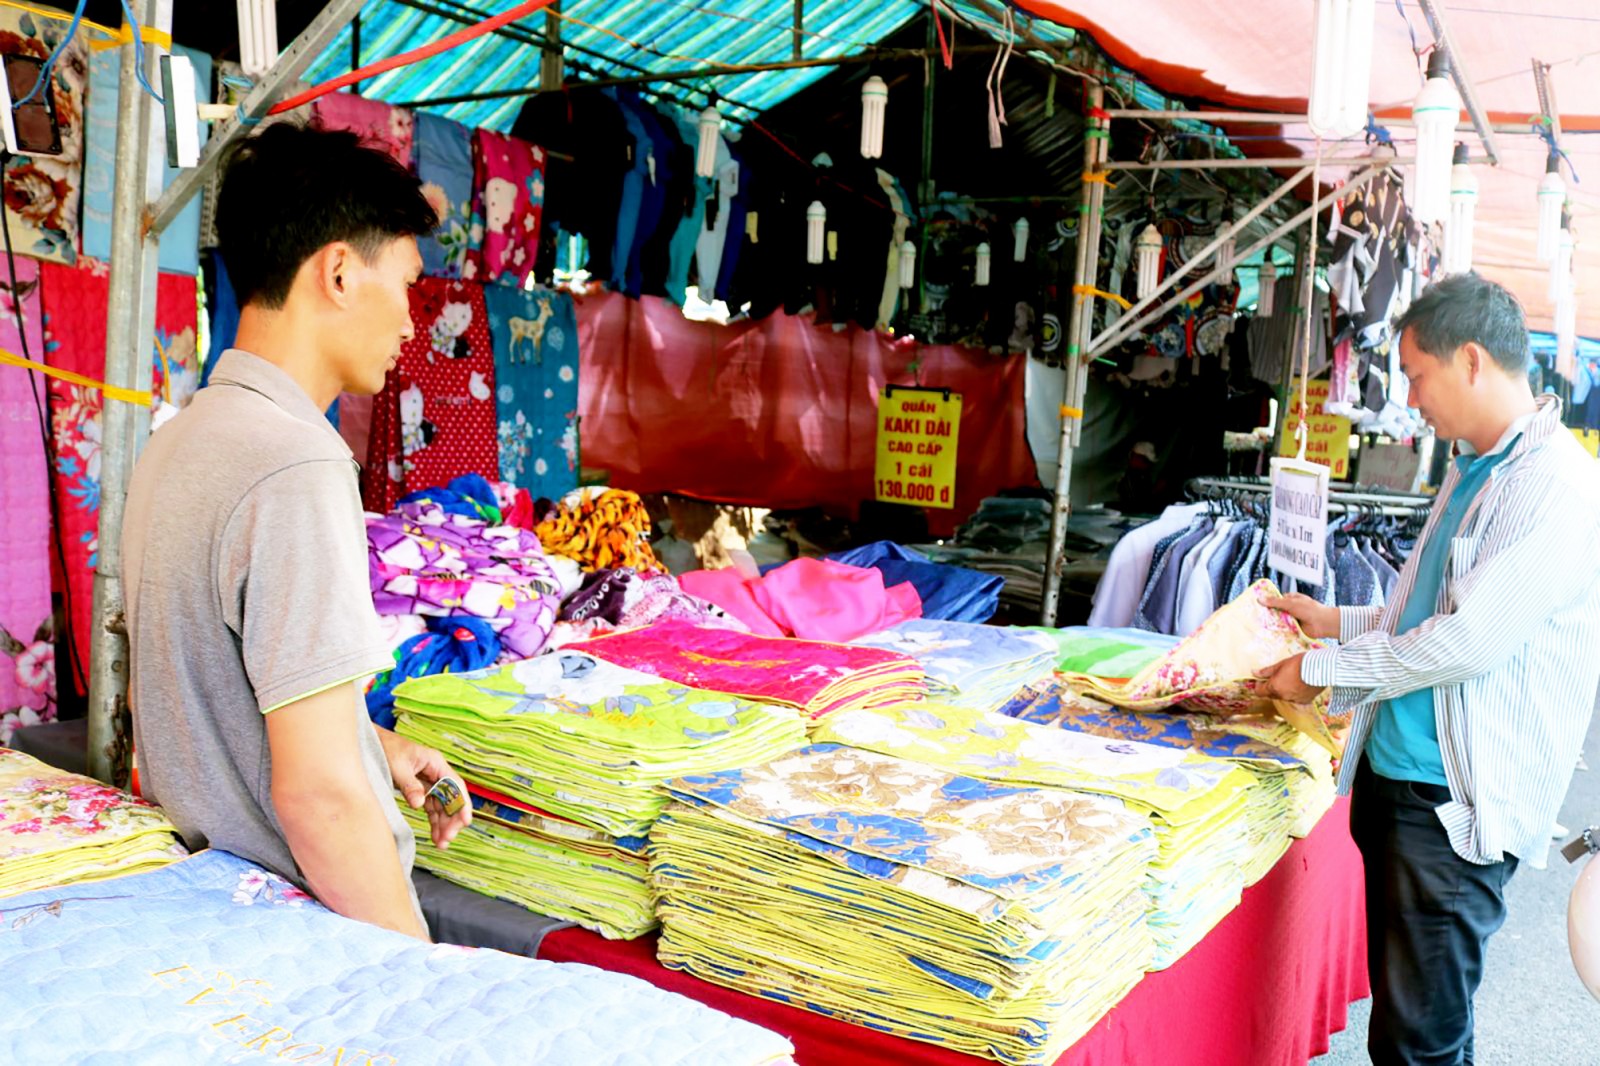 Mua bán hàng hóa tại Hội chợ Thương mại tổng hợp ở xã Trường Long, huyện Phong Điền. Ảnh: KHÁNH TRUNG